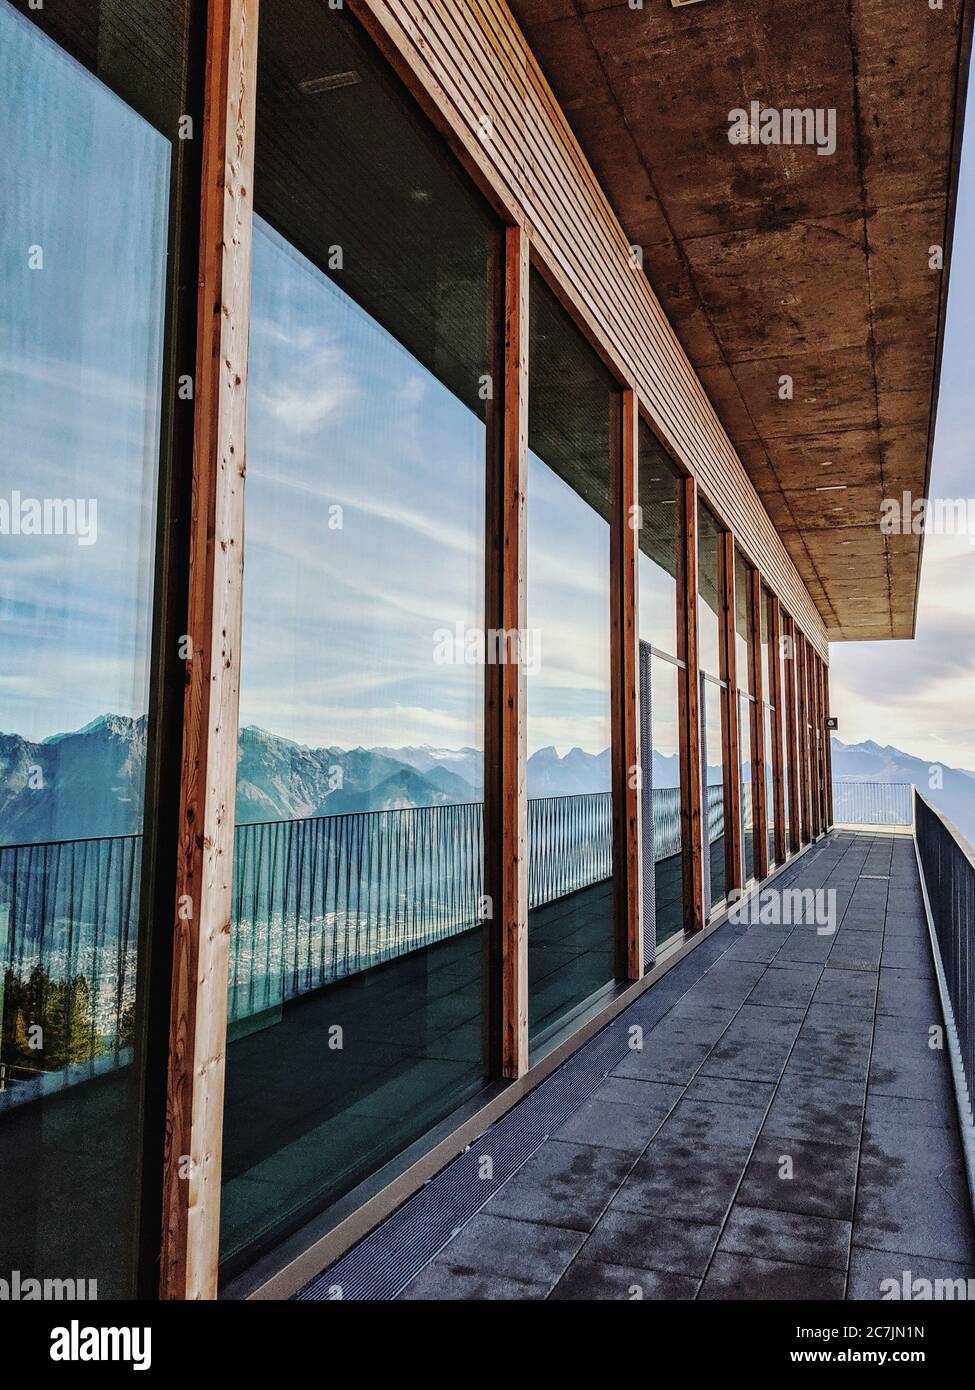 Il massiccio del Karwendel si riflette nella parte anteriore in vetro della stazione di montagna della funivia Patscherkofel Foto Stock